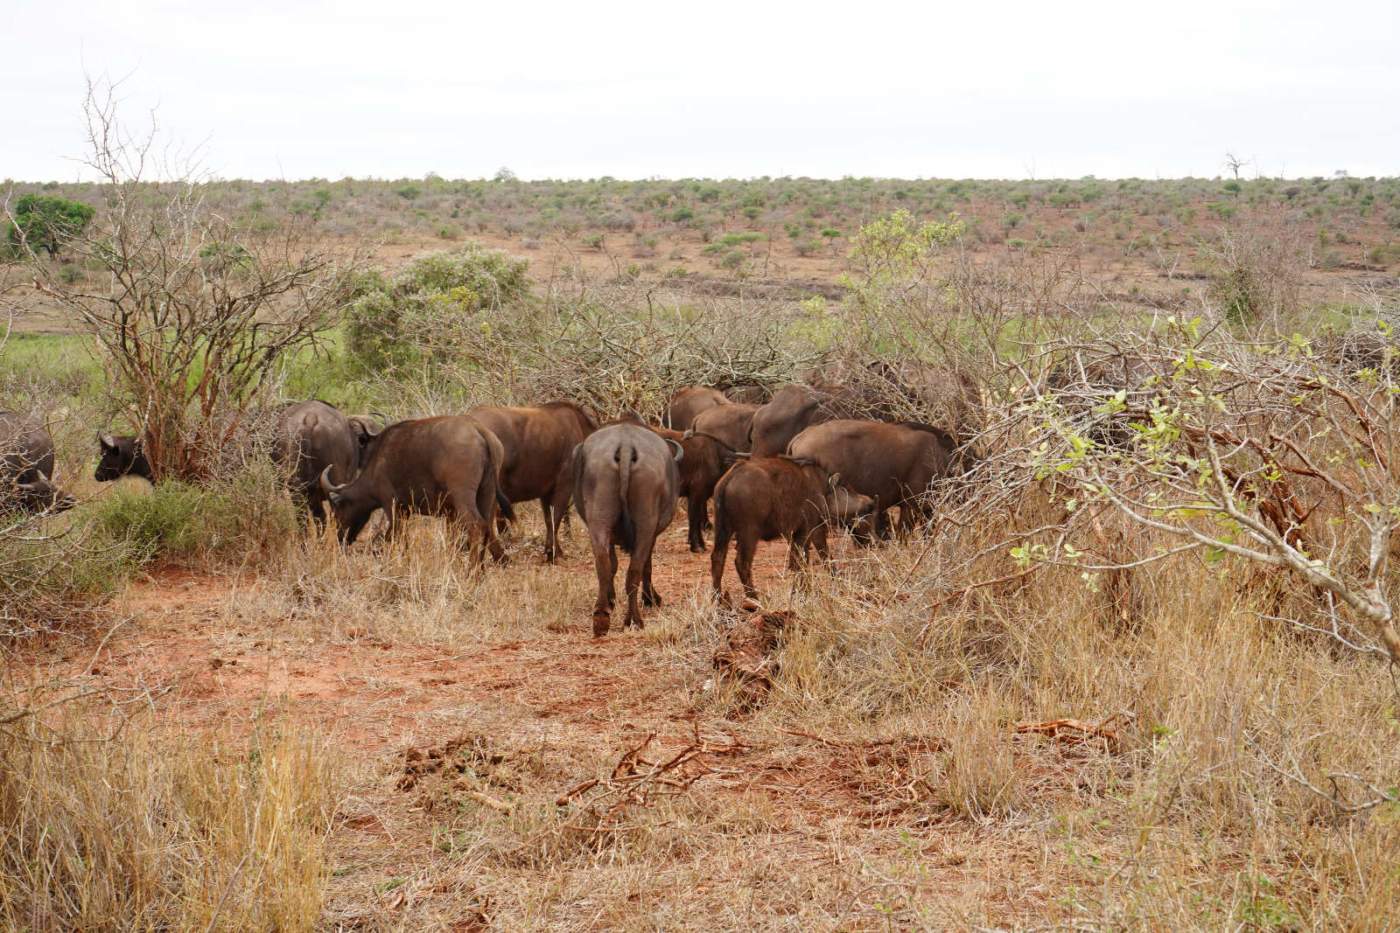 Im Krüger Nationalpark können wir wenn alles gut läuft die Big Five beobachten. Eine Herde Büffel ist im größten Wildschutzgebiets Südafrikas durchaus anzutreffen.